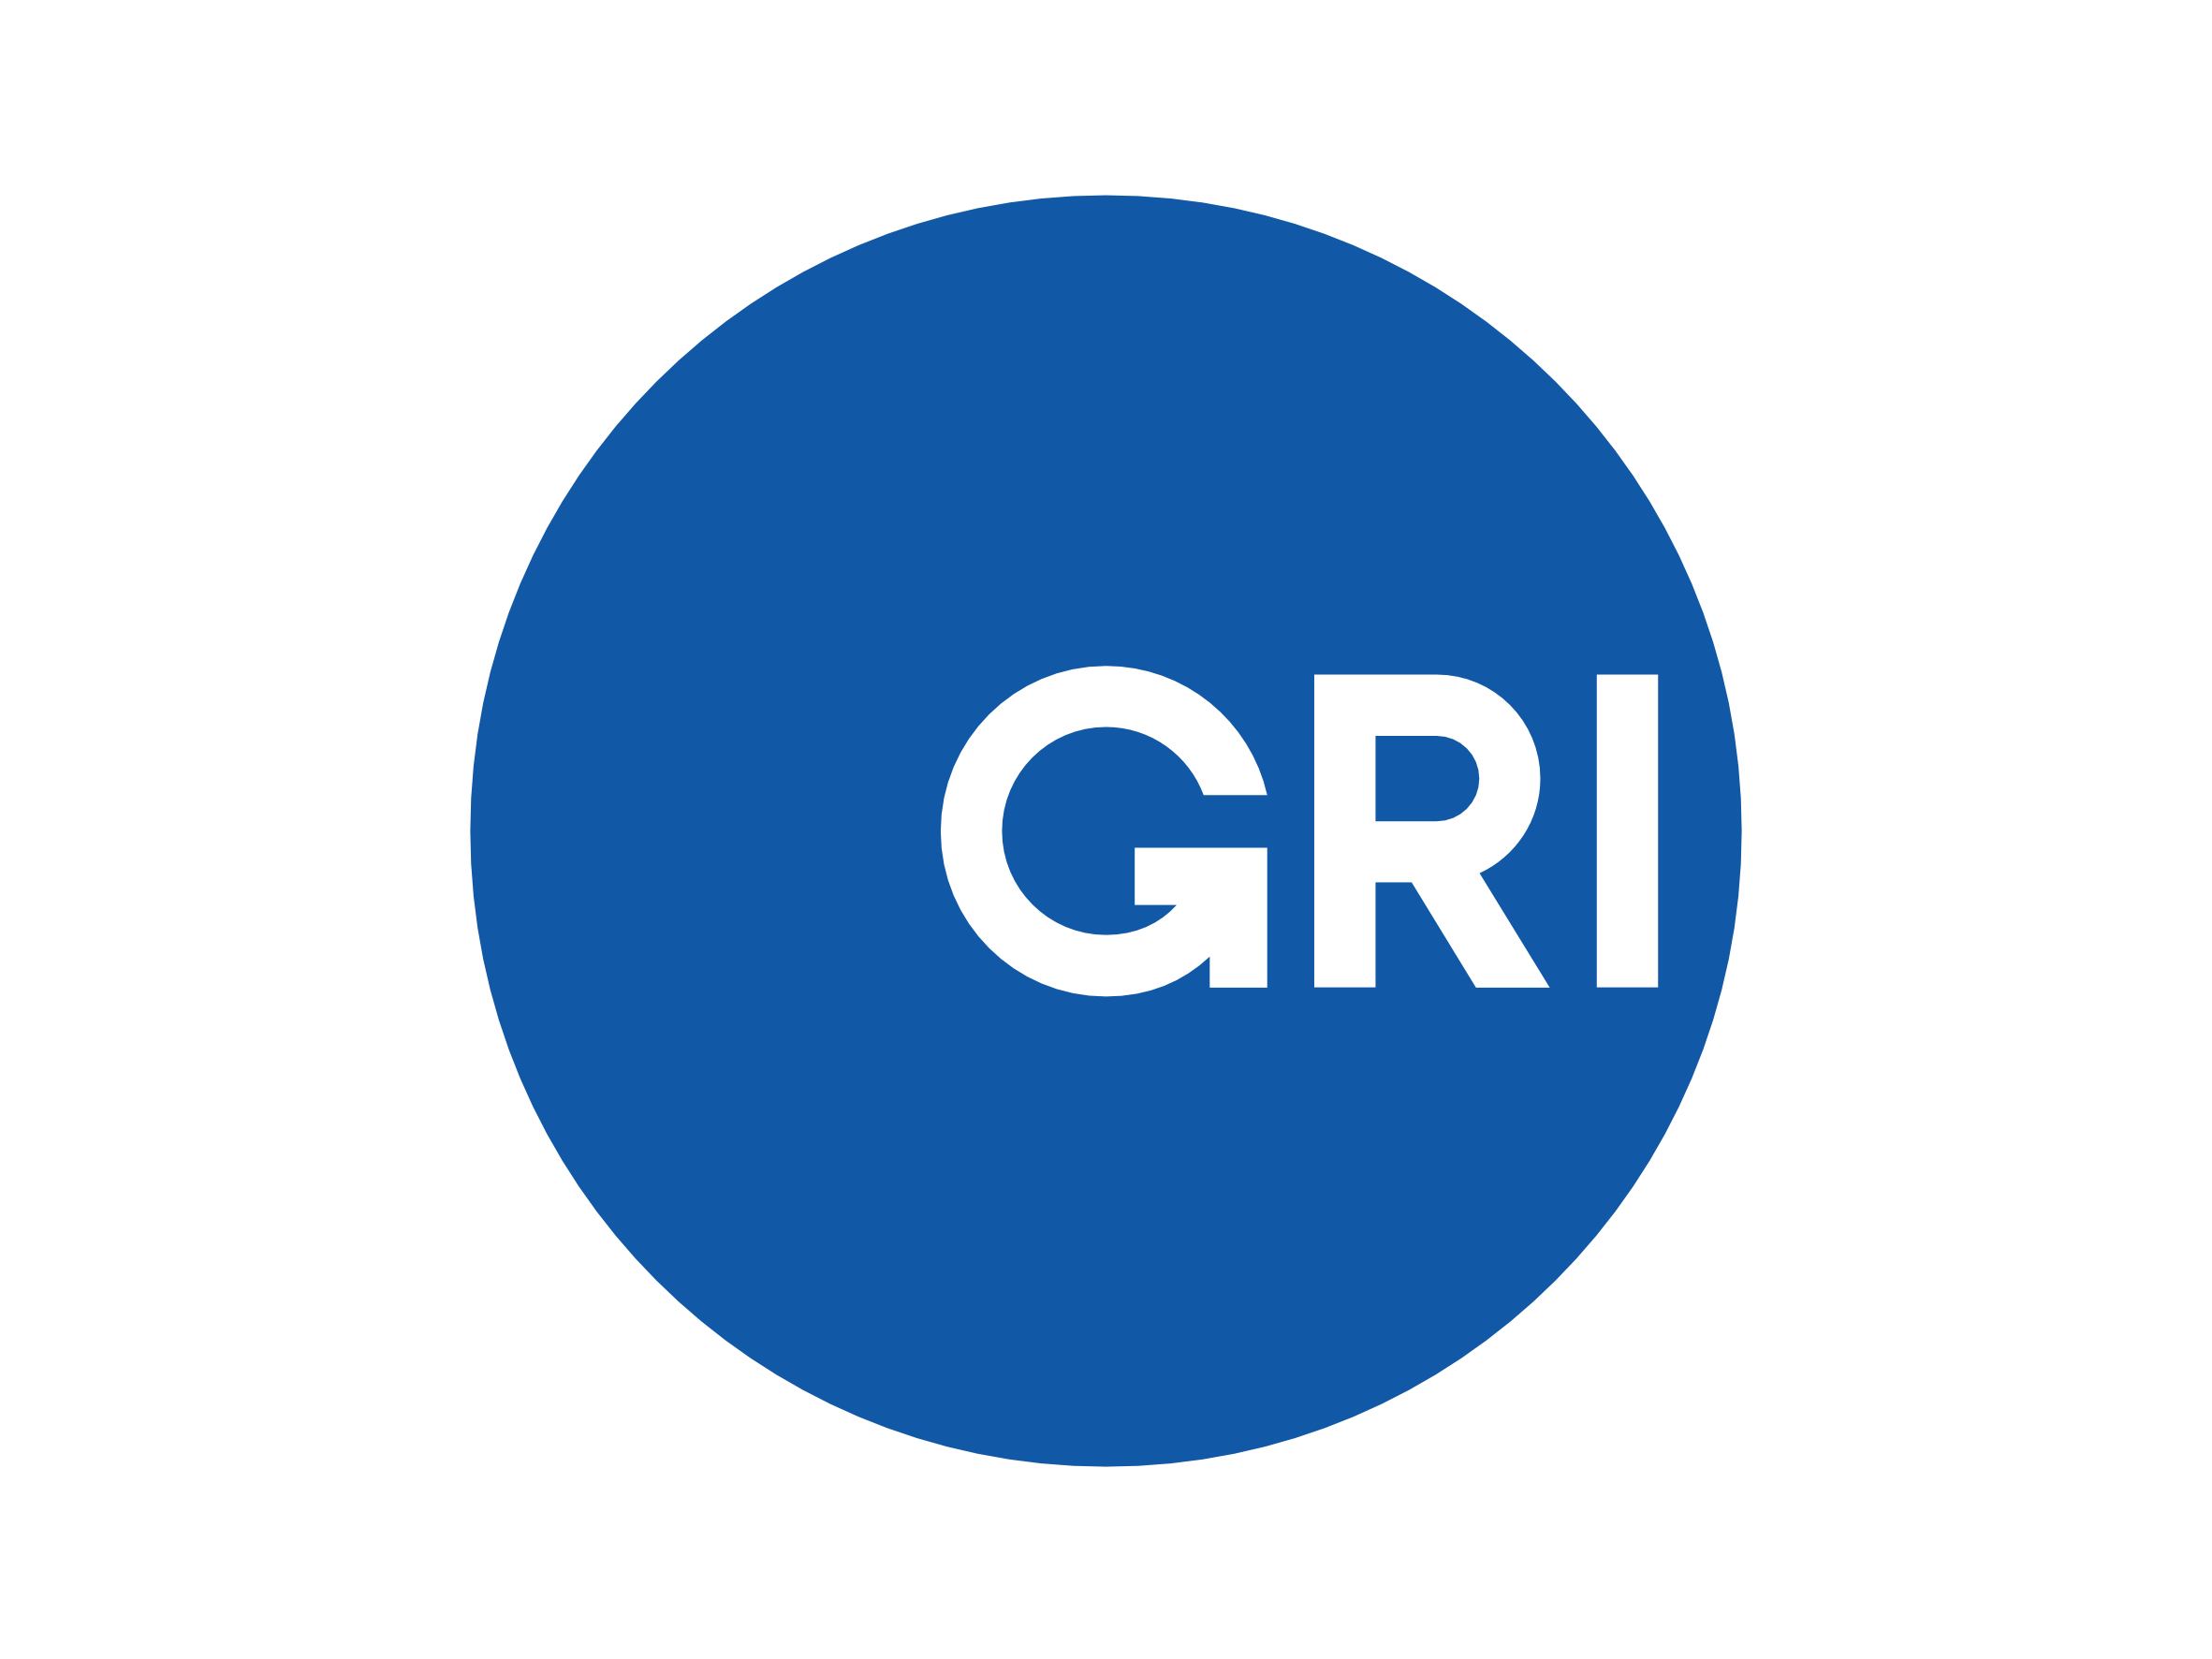 Global Reporting Initiative: Quality Control Consultant im Auftrag der GRI für die Länder Deutschland, Österreich und Schweiz. Hier steht die Qualitätssicherung der GRI-zertifizierten Workshops zur Nachhaltigkeitsberichterstattung nach GRI-G3.1 und -G4 im Fokus